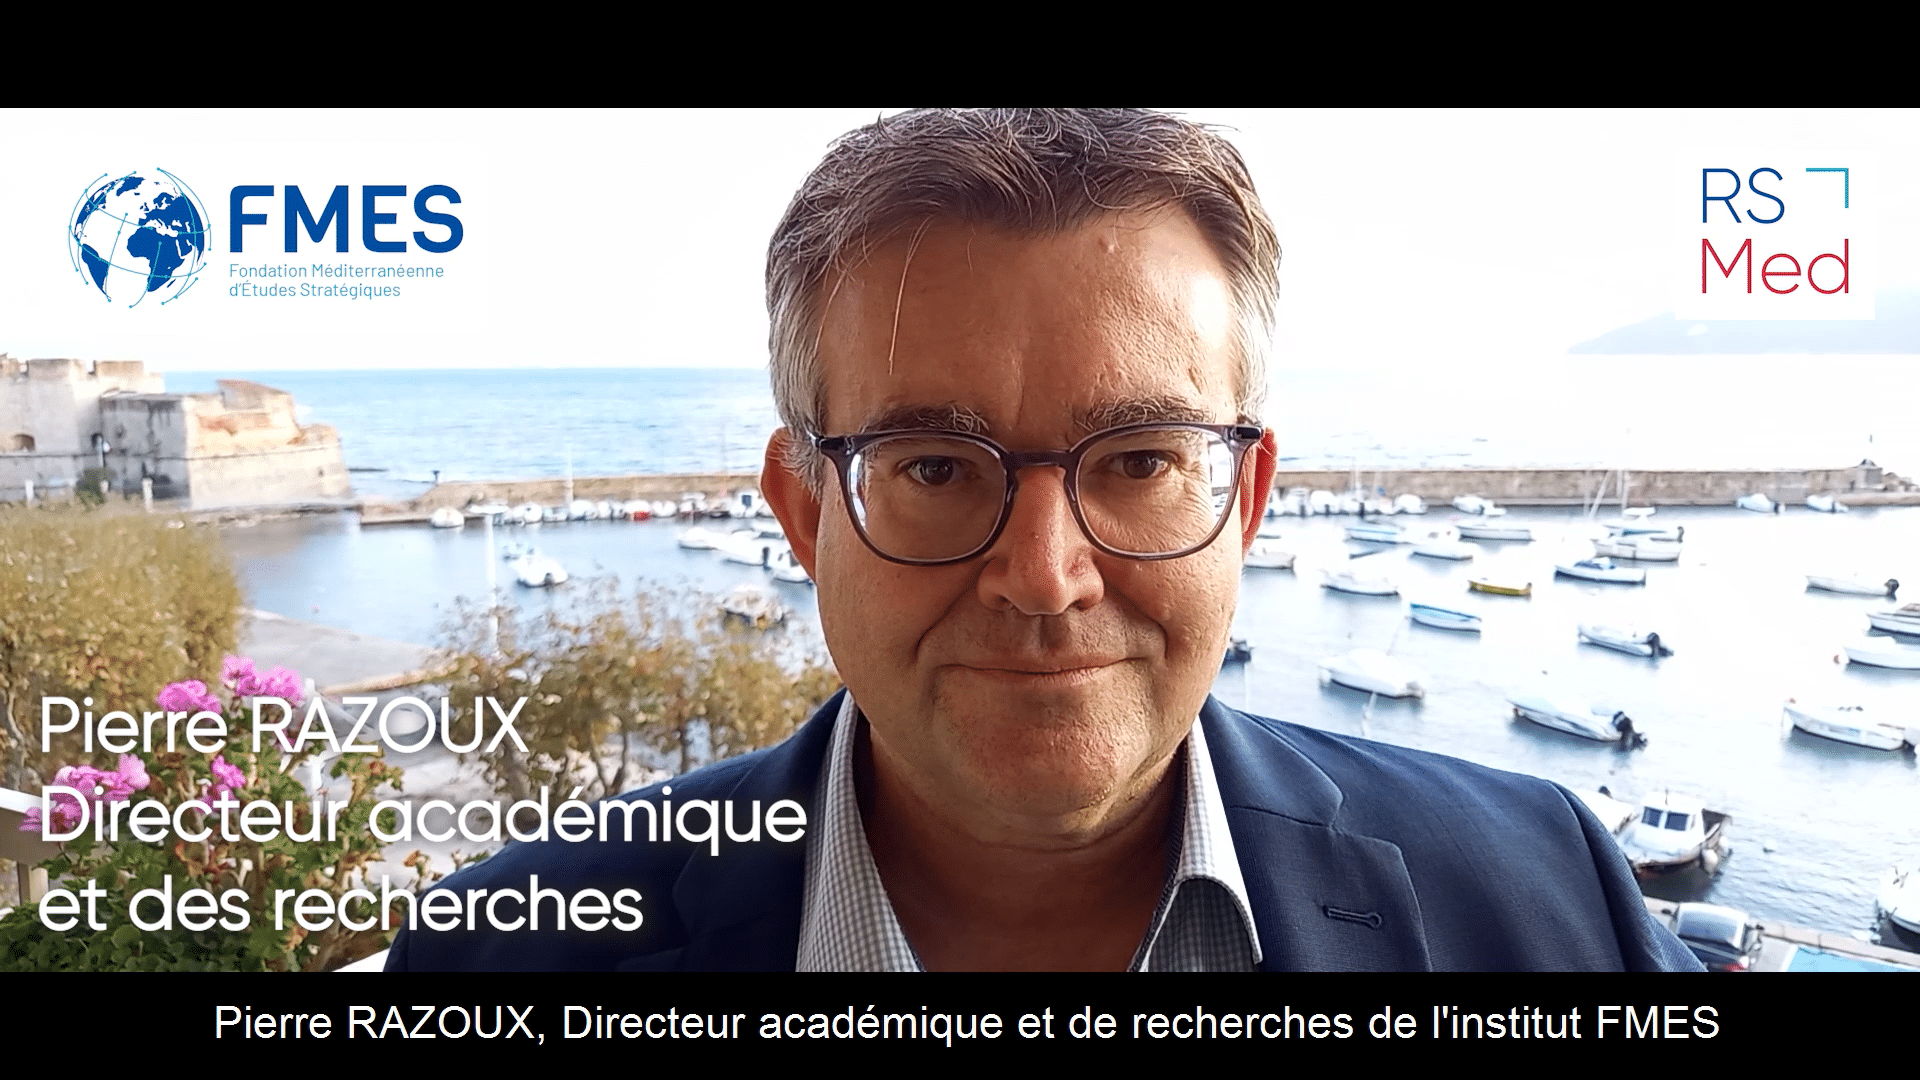 Pierre Razoux, Directeur académique de la FMES, nous explique les RSMed